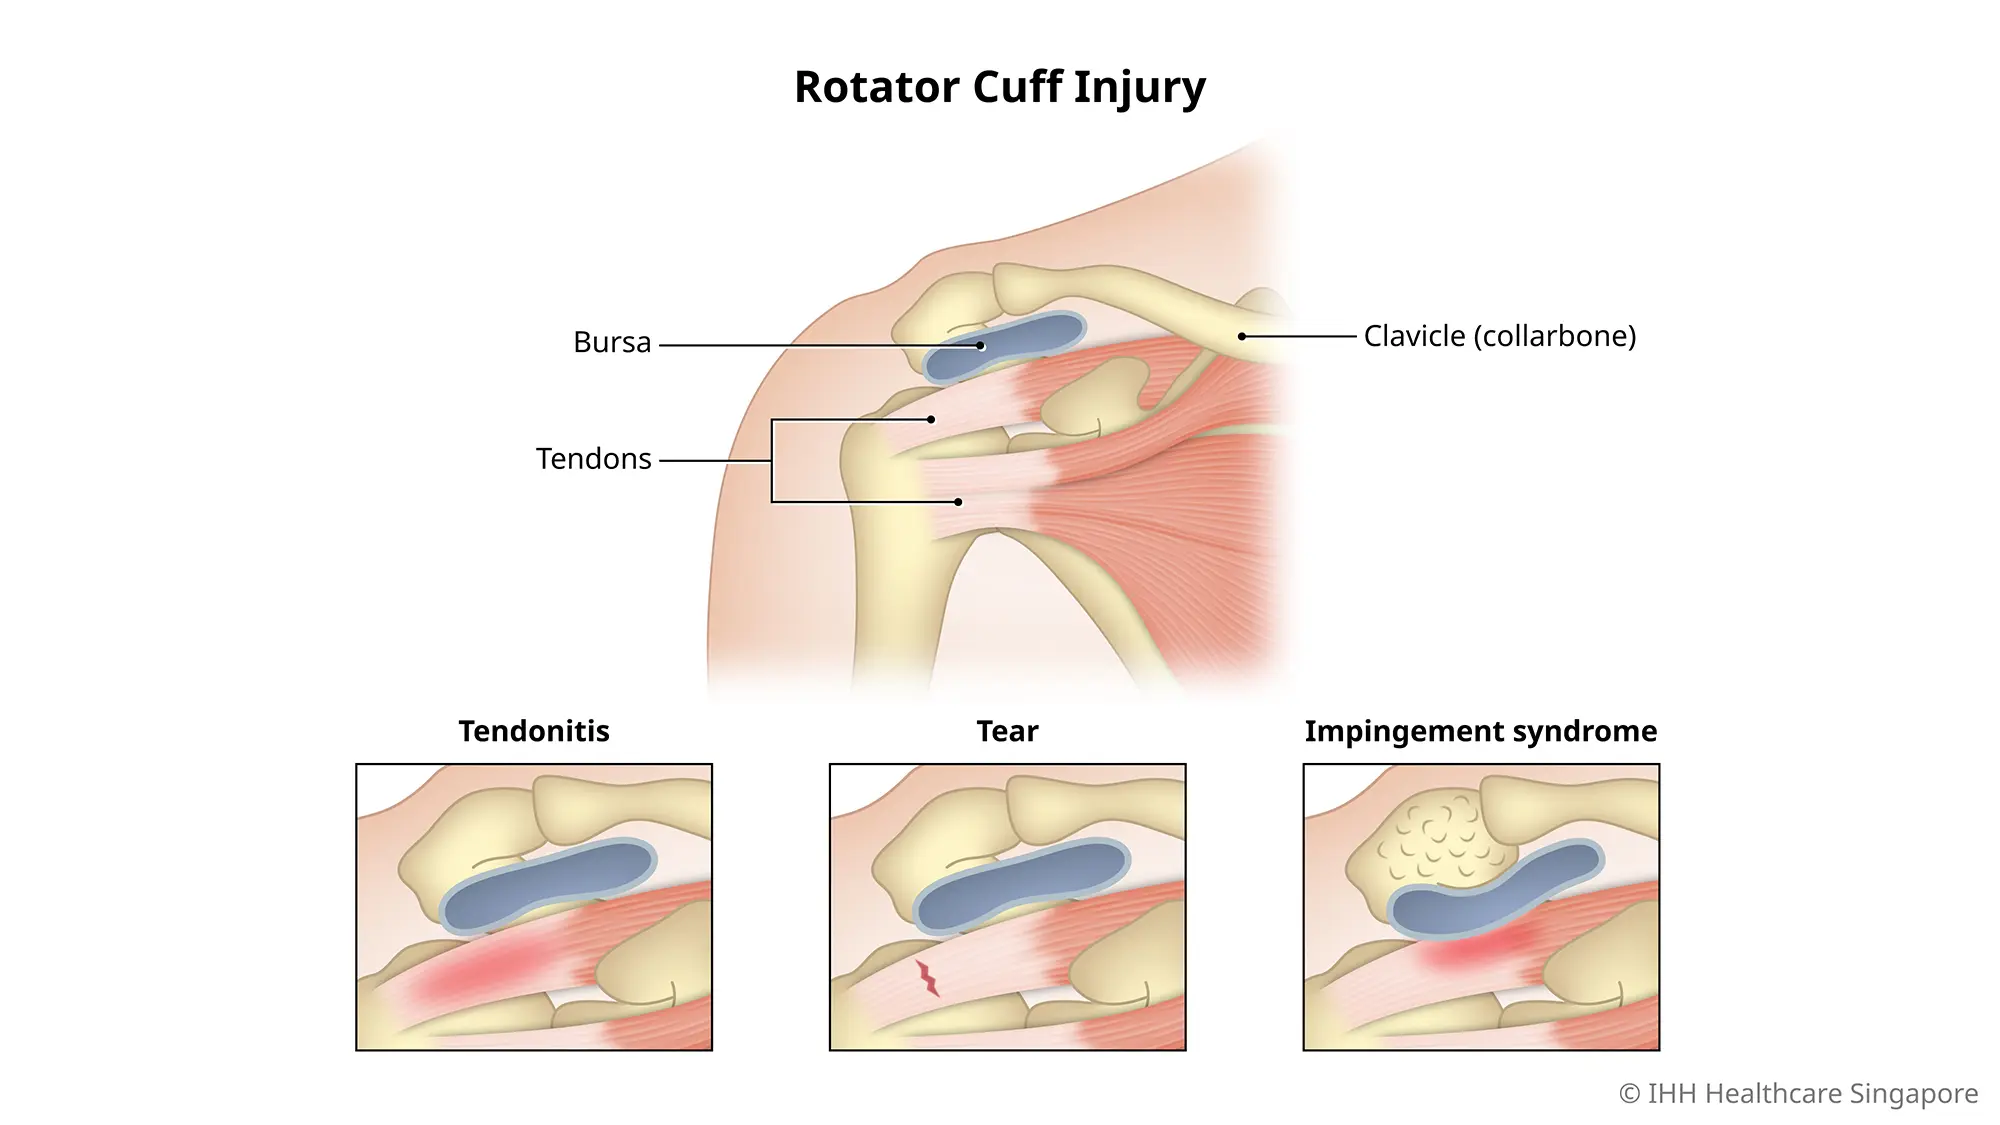 肩袖损伤是指肩关节周围的肌肉和肌腱出现炎症和肿胀。